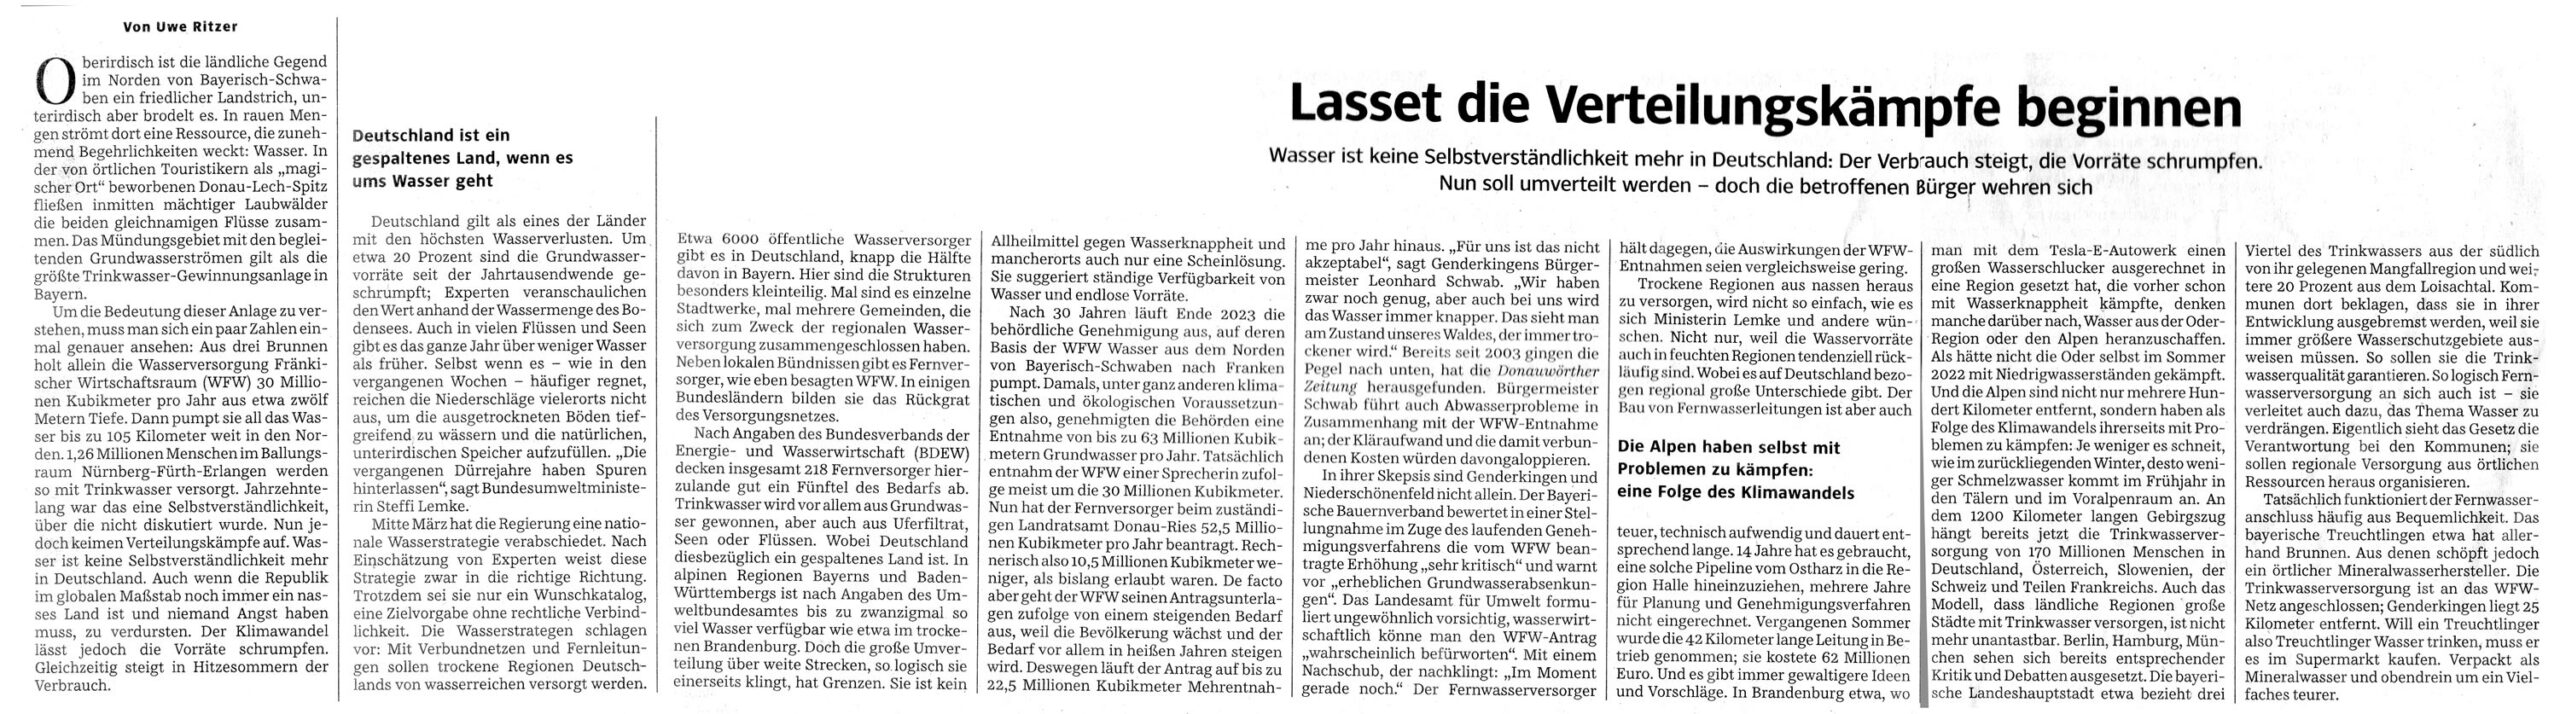 Artikel von Uwe Ritzer vom 27.04.203 aus der Süddeutschen Zeitung.